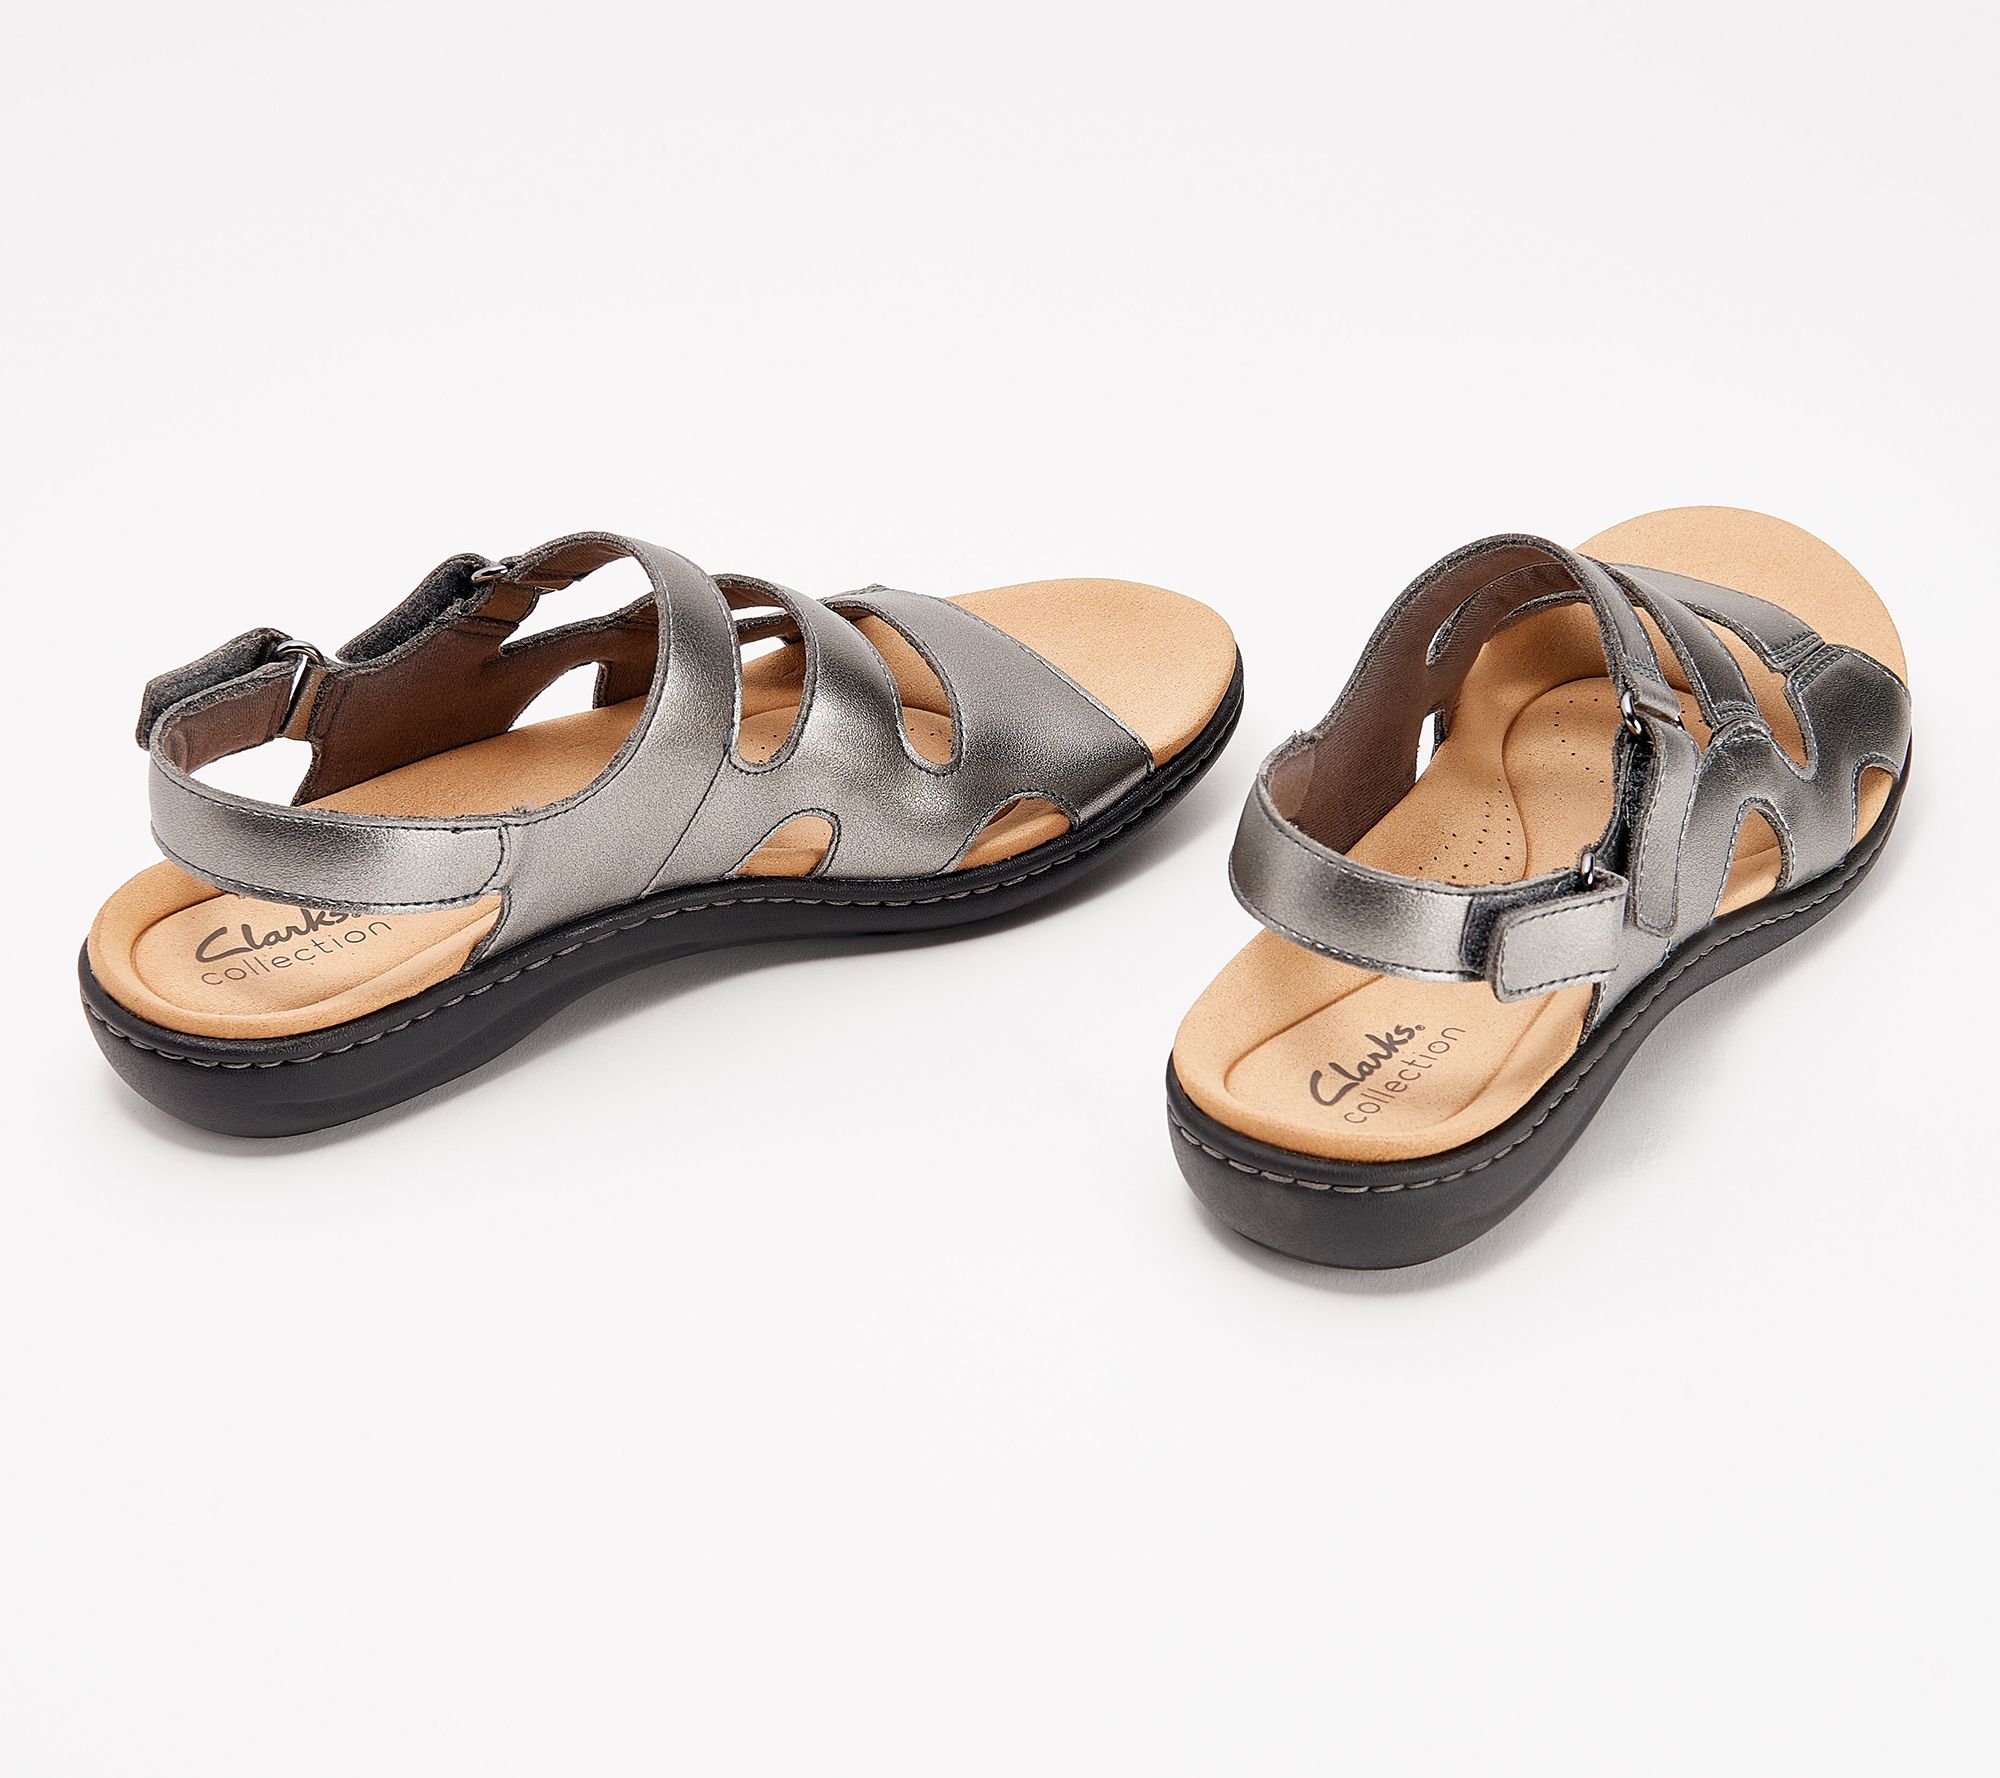 midler Skøn Oversigt Clarks Collection Adjustable Sandals - Laurieann Style - QVC.com